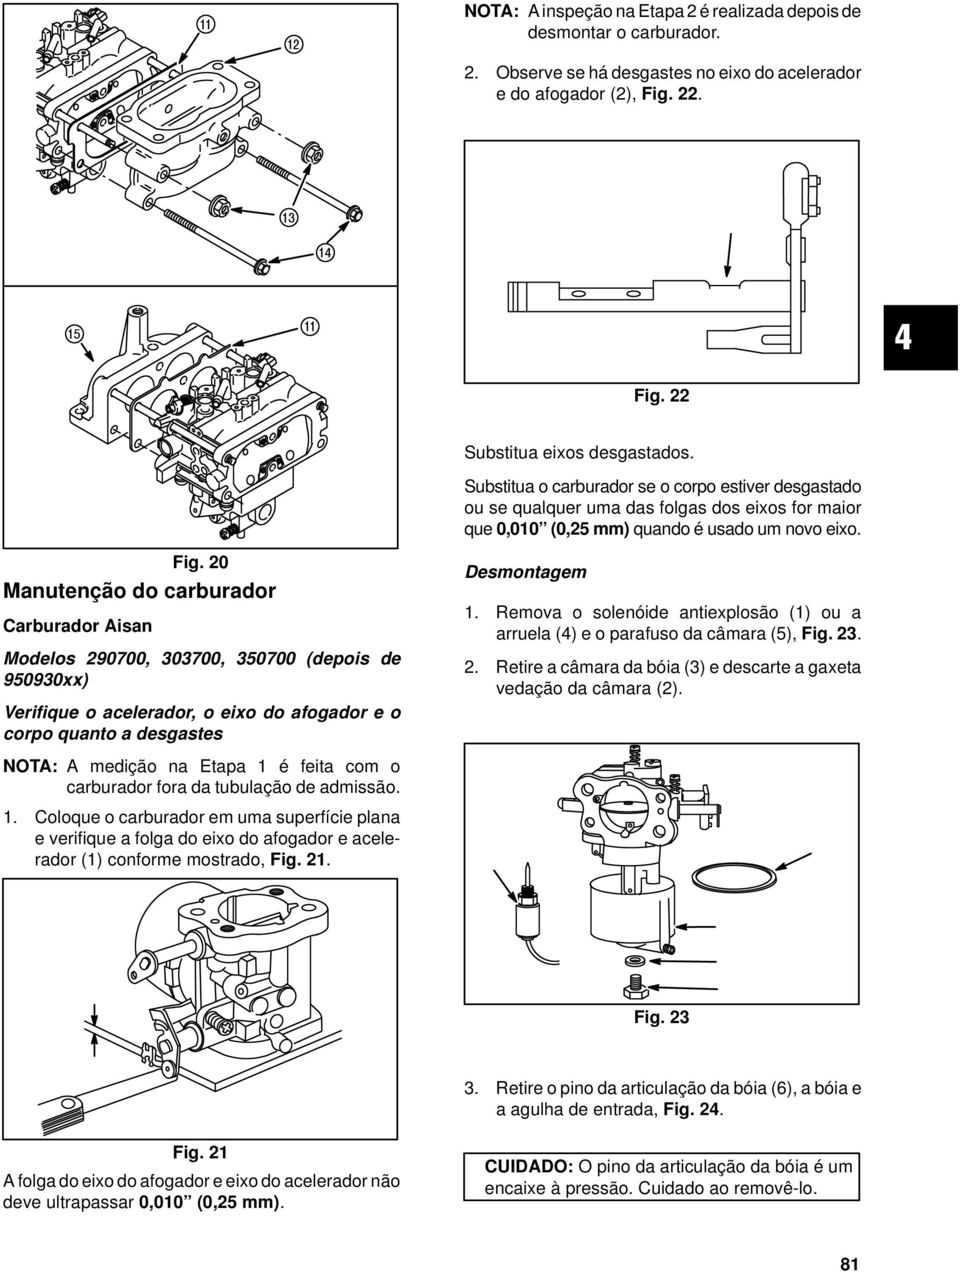 20 Manutenção do carburador Carburador Aisan Modelos 290700, 303700, 350700 (depois de 950930xx) Verifique o acelerador, o eixo do afogador e o corpo quanto a desgastes Desmontagem 1.